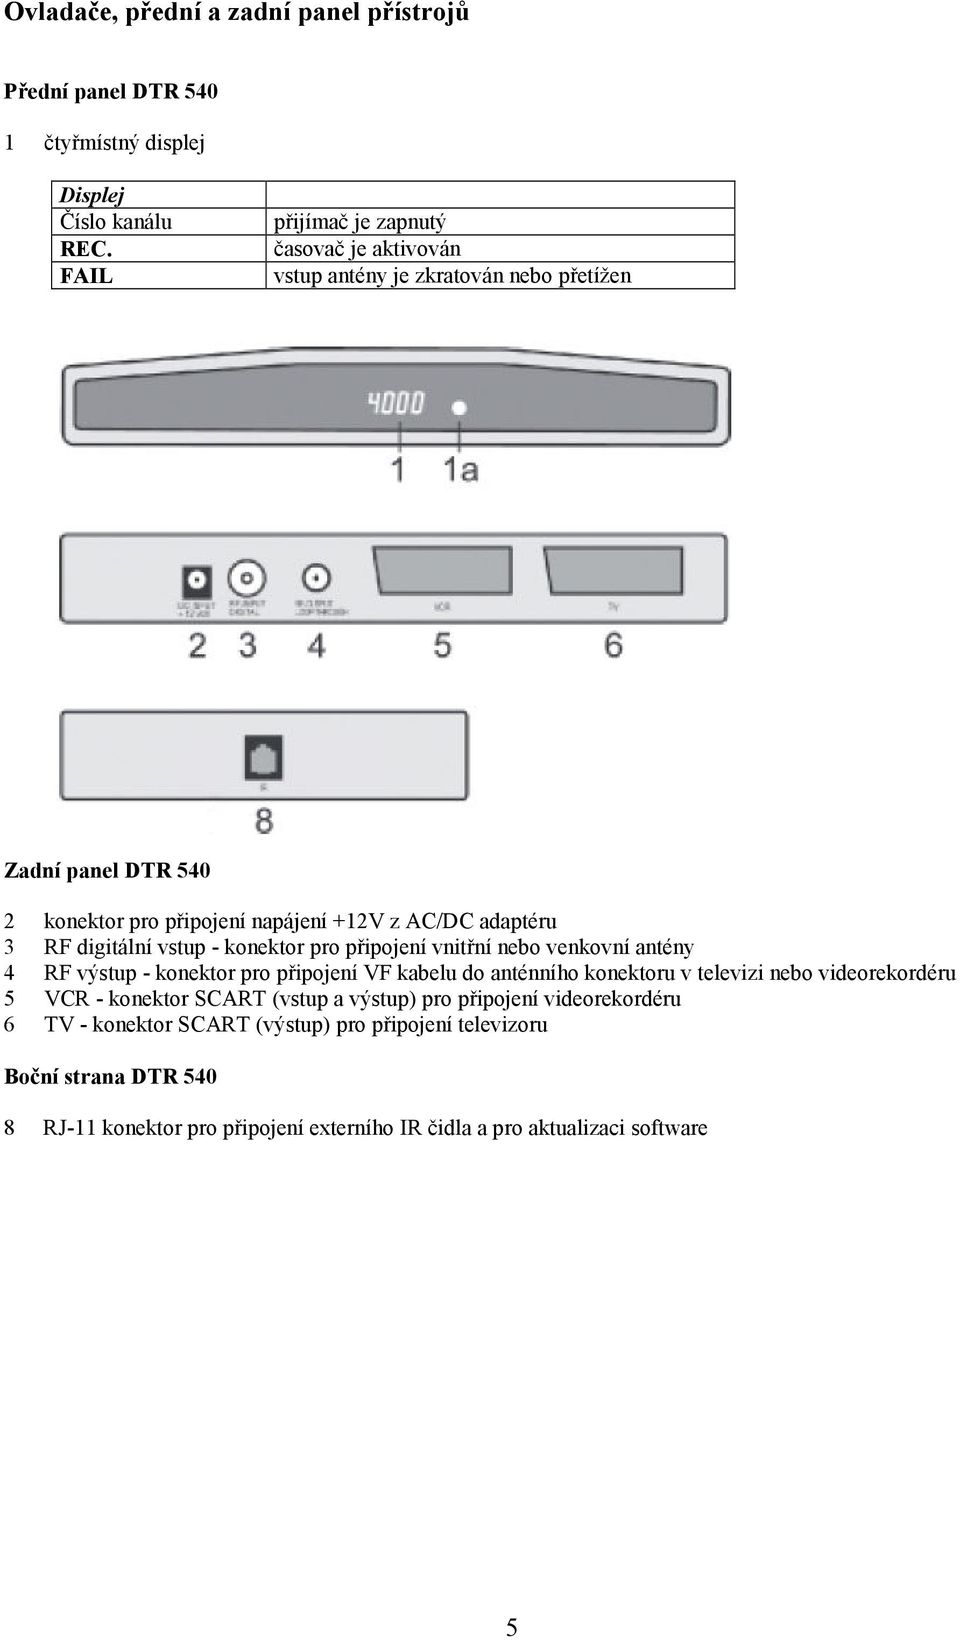 digitální vstup - konektor pro připojení vnitřní nebo venkovní antény 4 RF výstup - konektor pro připojení VF kabelu do anténního konektoru v televizi nebo